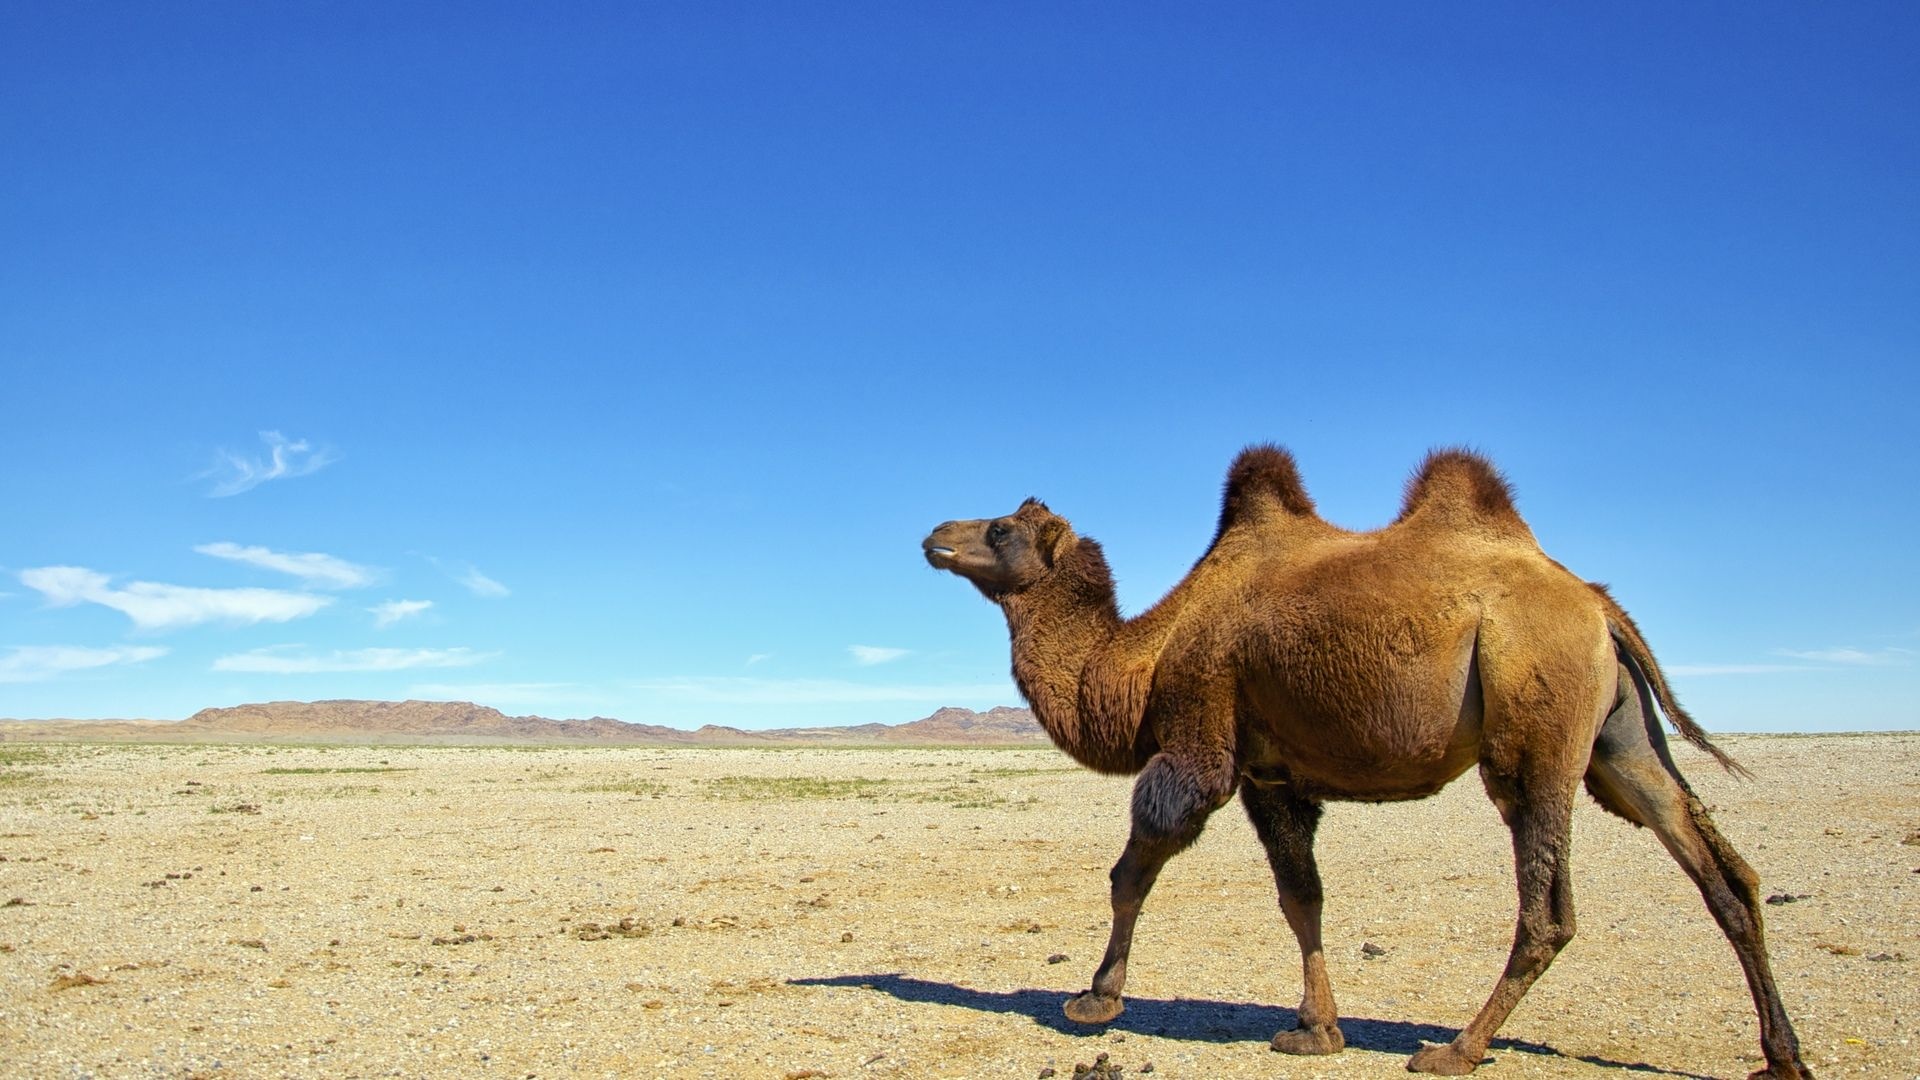 Camel species, Desert adventure, Majestic animals, Animal wallpapers, 1920x1080 Full HD Desktop